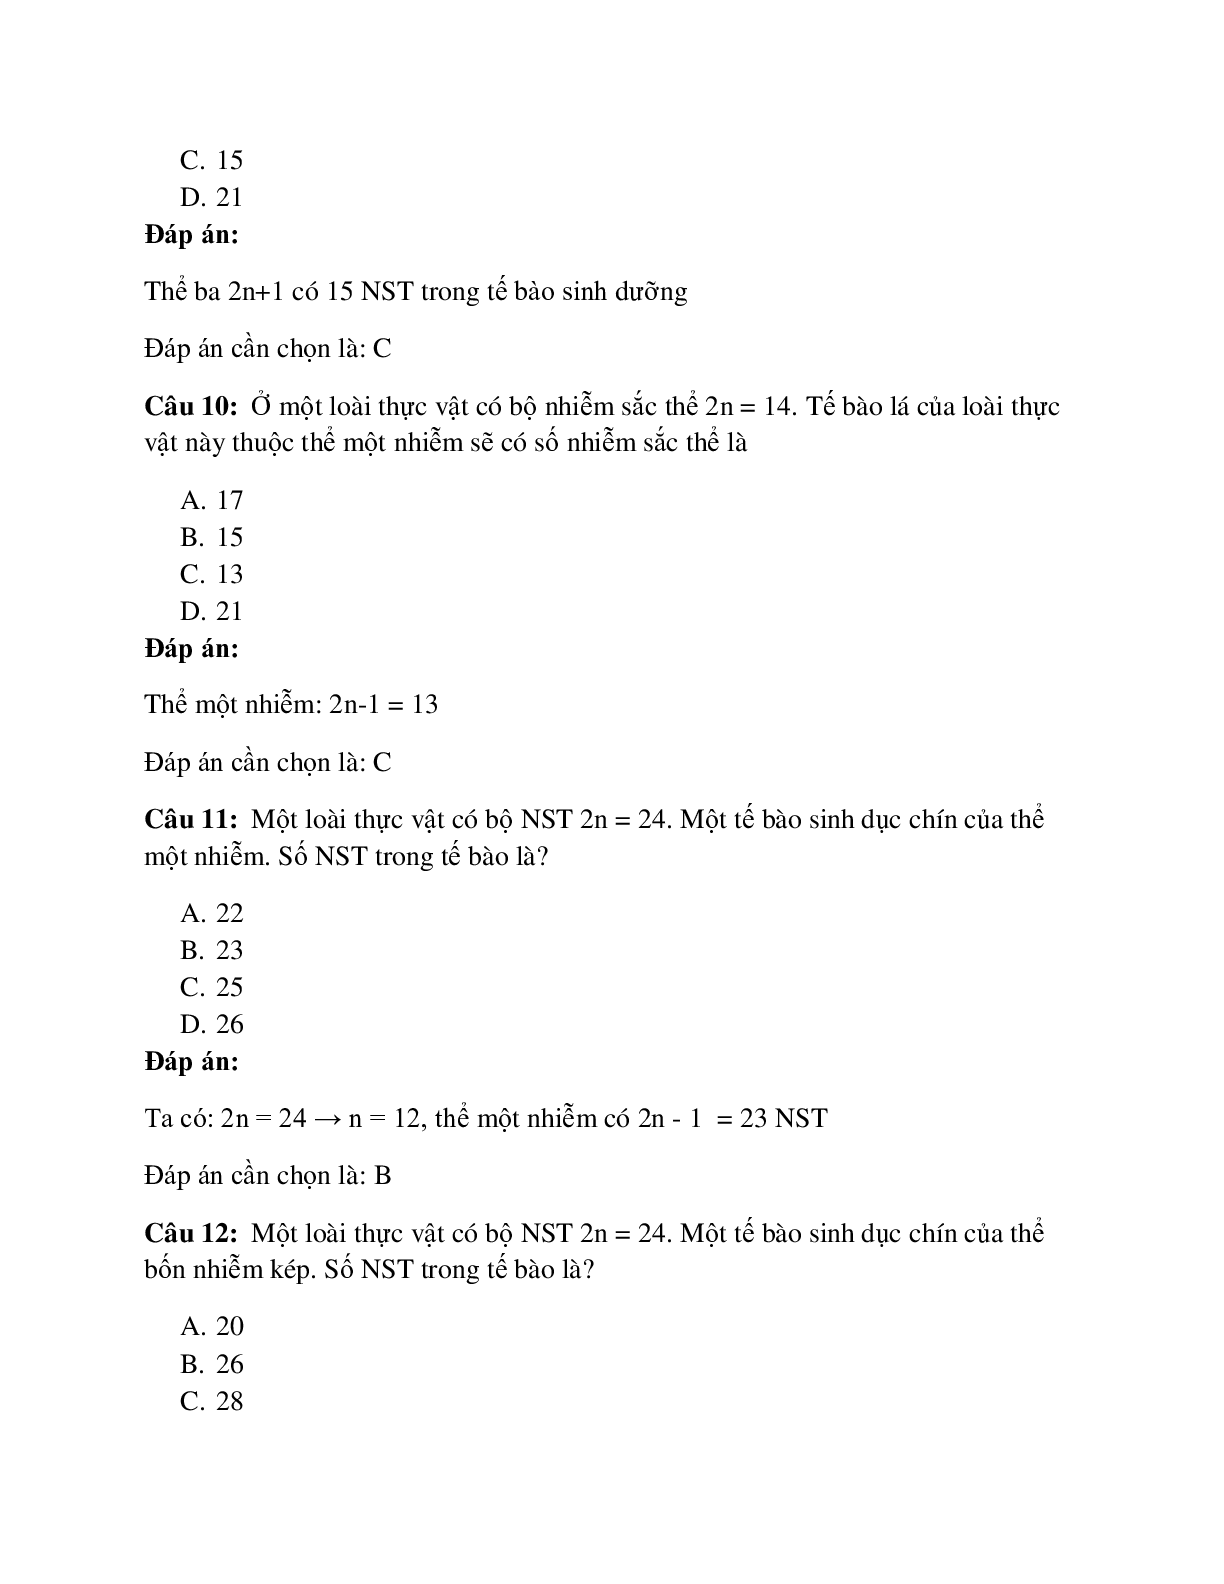 59 câu Trắc nghiệm Sinh học lớp 12 Bài 6 có đáp án 2023: Đột biến số lượng NST (trang 4)